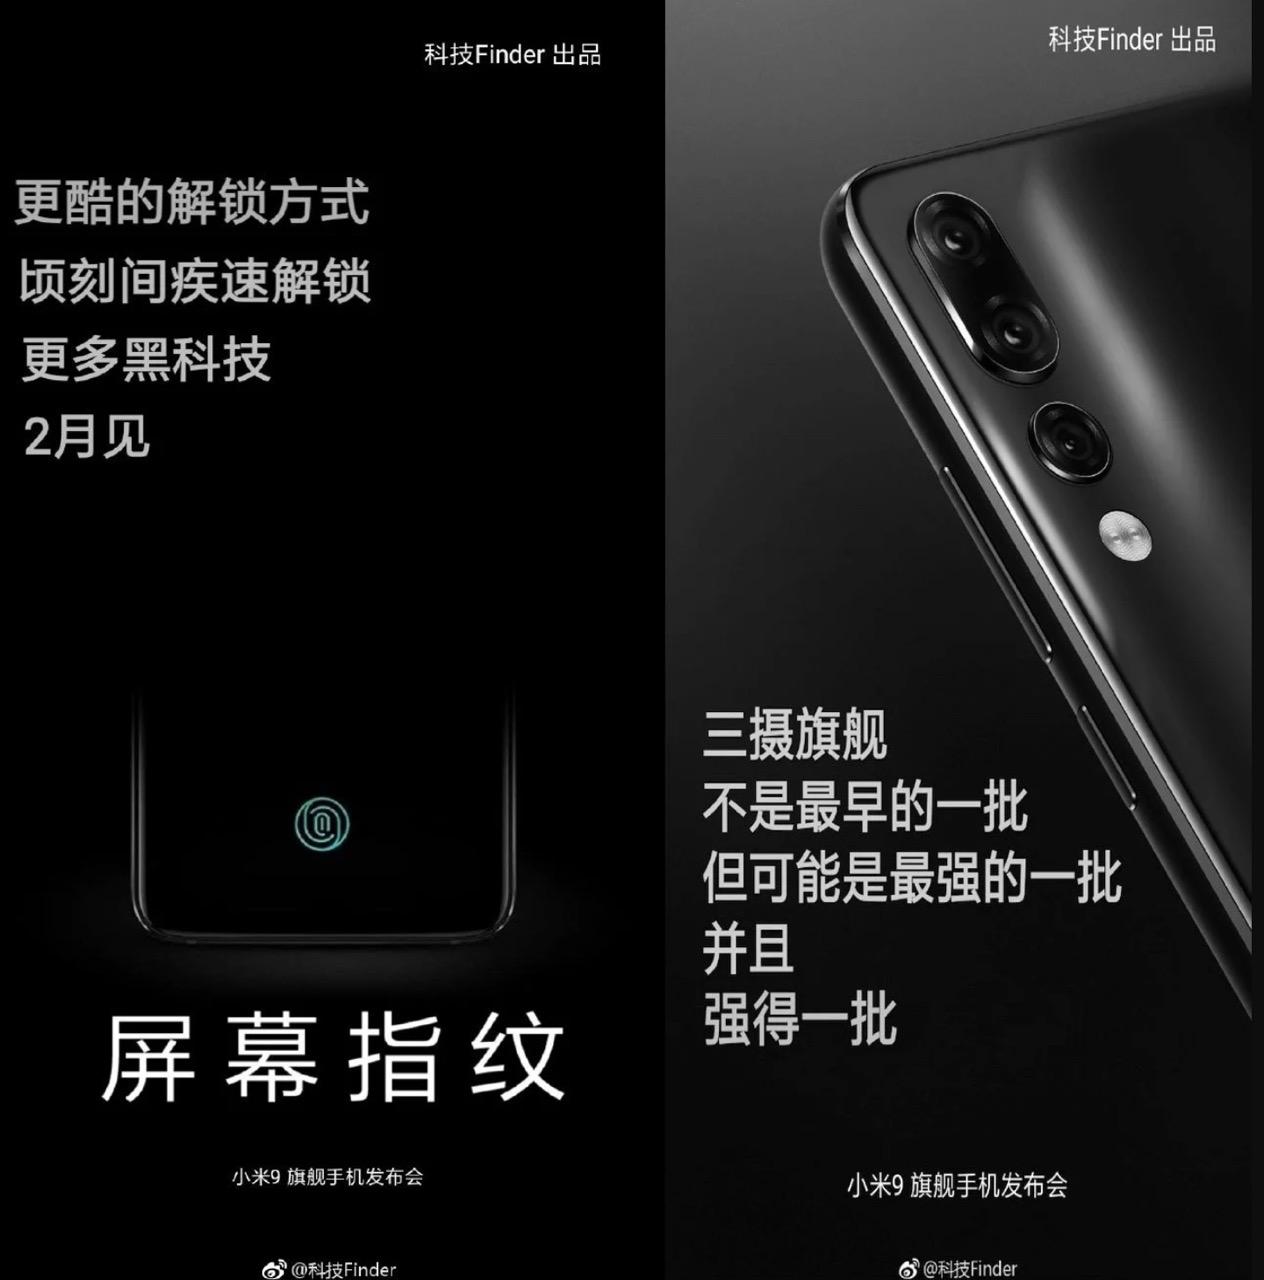 Xiaomi bisa menghadirkan Mi 9 selama bulan Februari 2